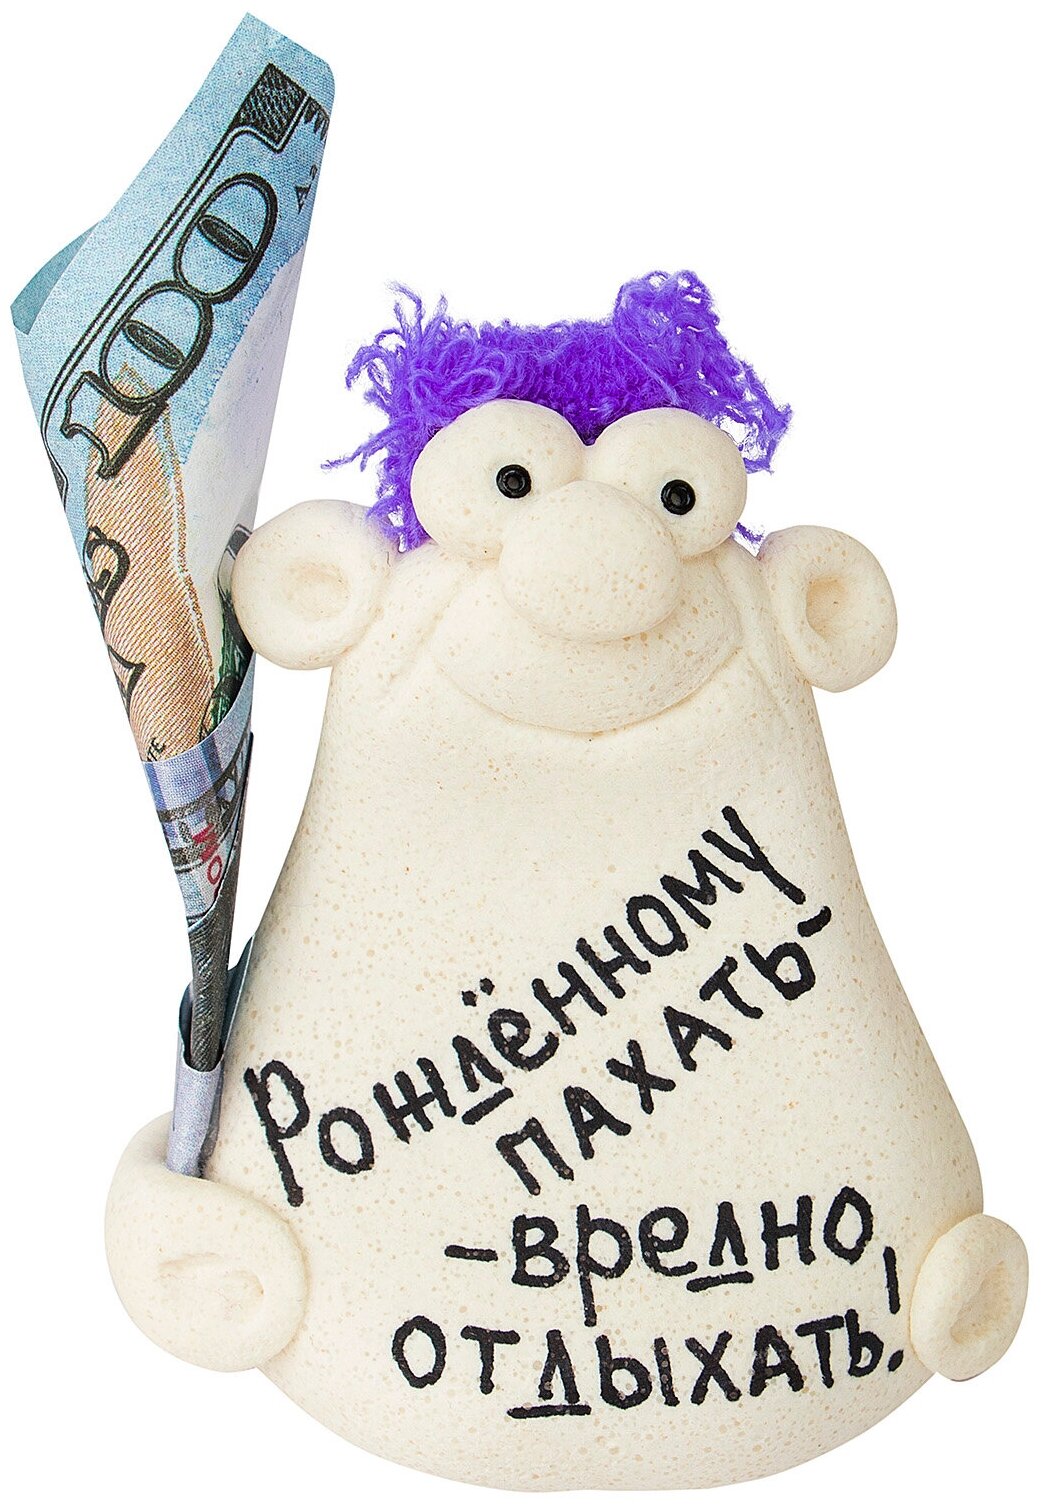 Фигурка сувенир на стол с деньгами подарок мужчине женщине универсальный корпоративный коллеге на 23 февраля 8 марта